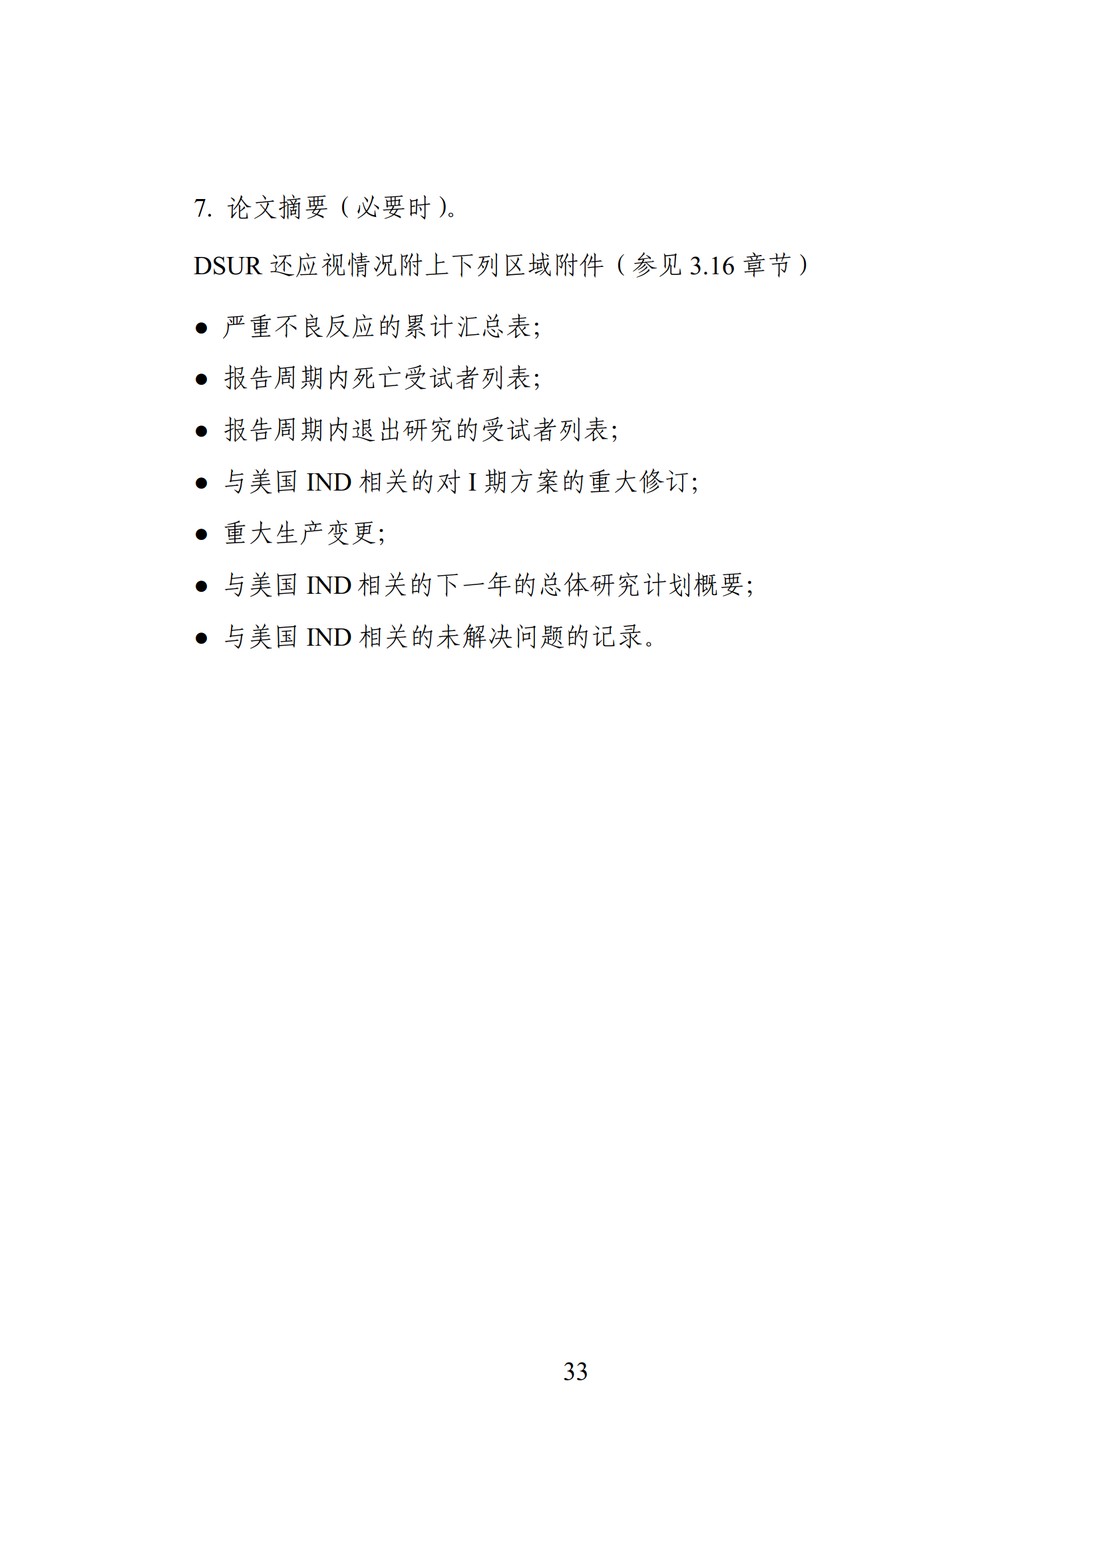 E2F 研发期间安全性更新报告(中文翻译公开征求意见稿)_38.jpg